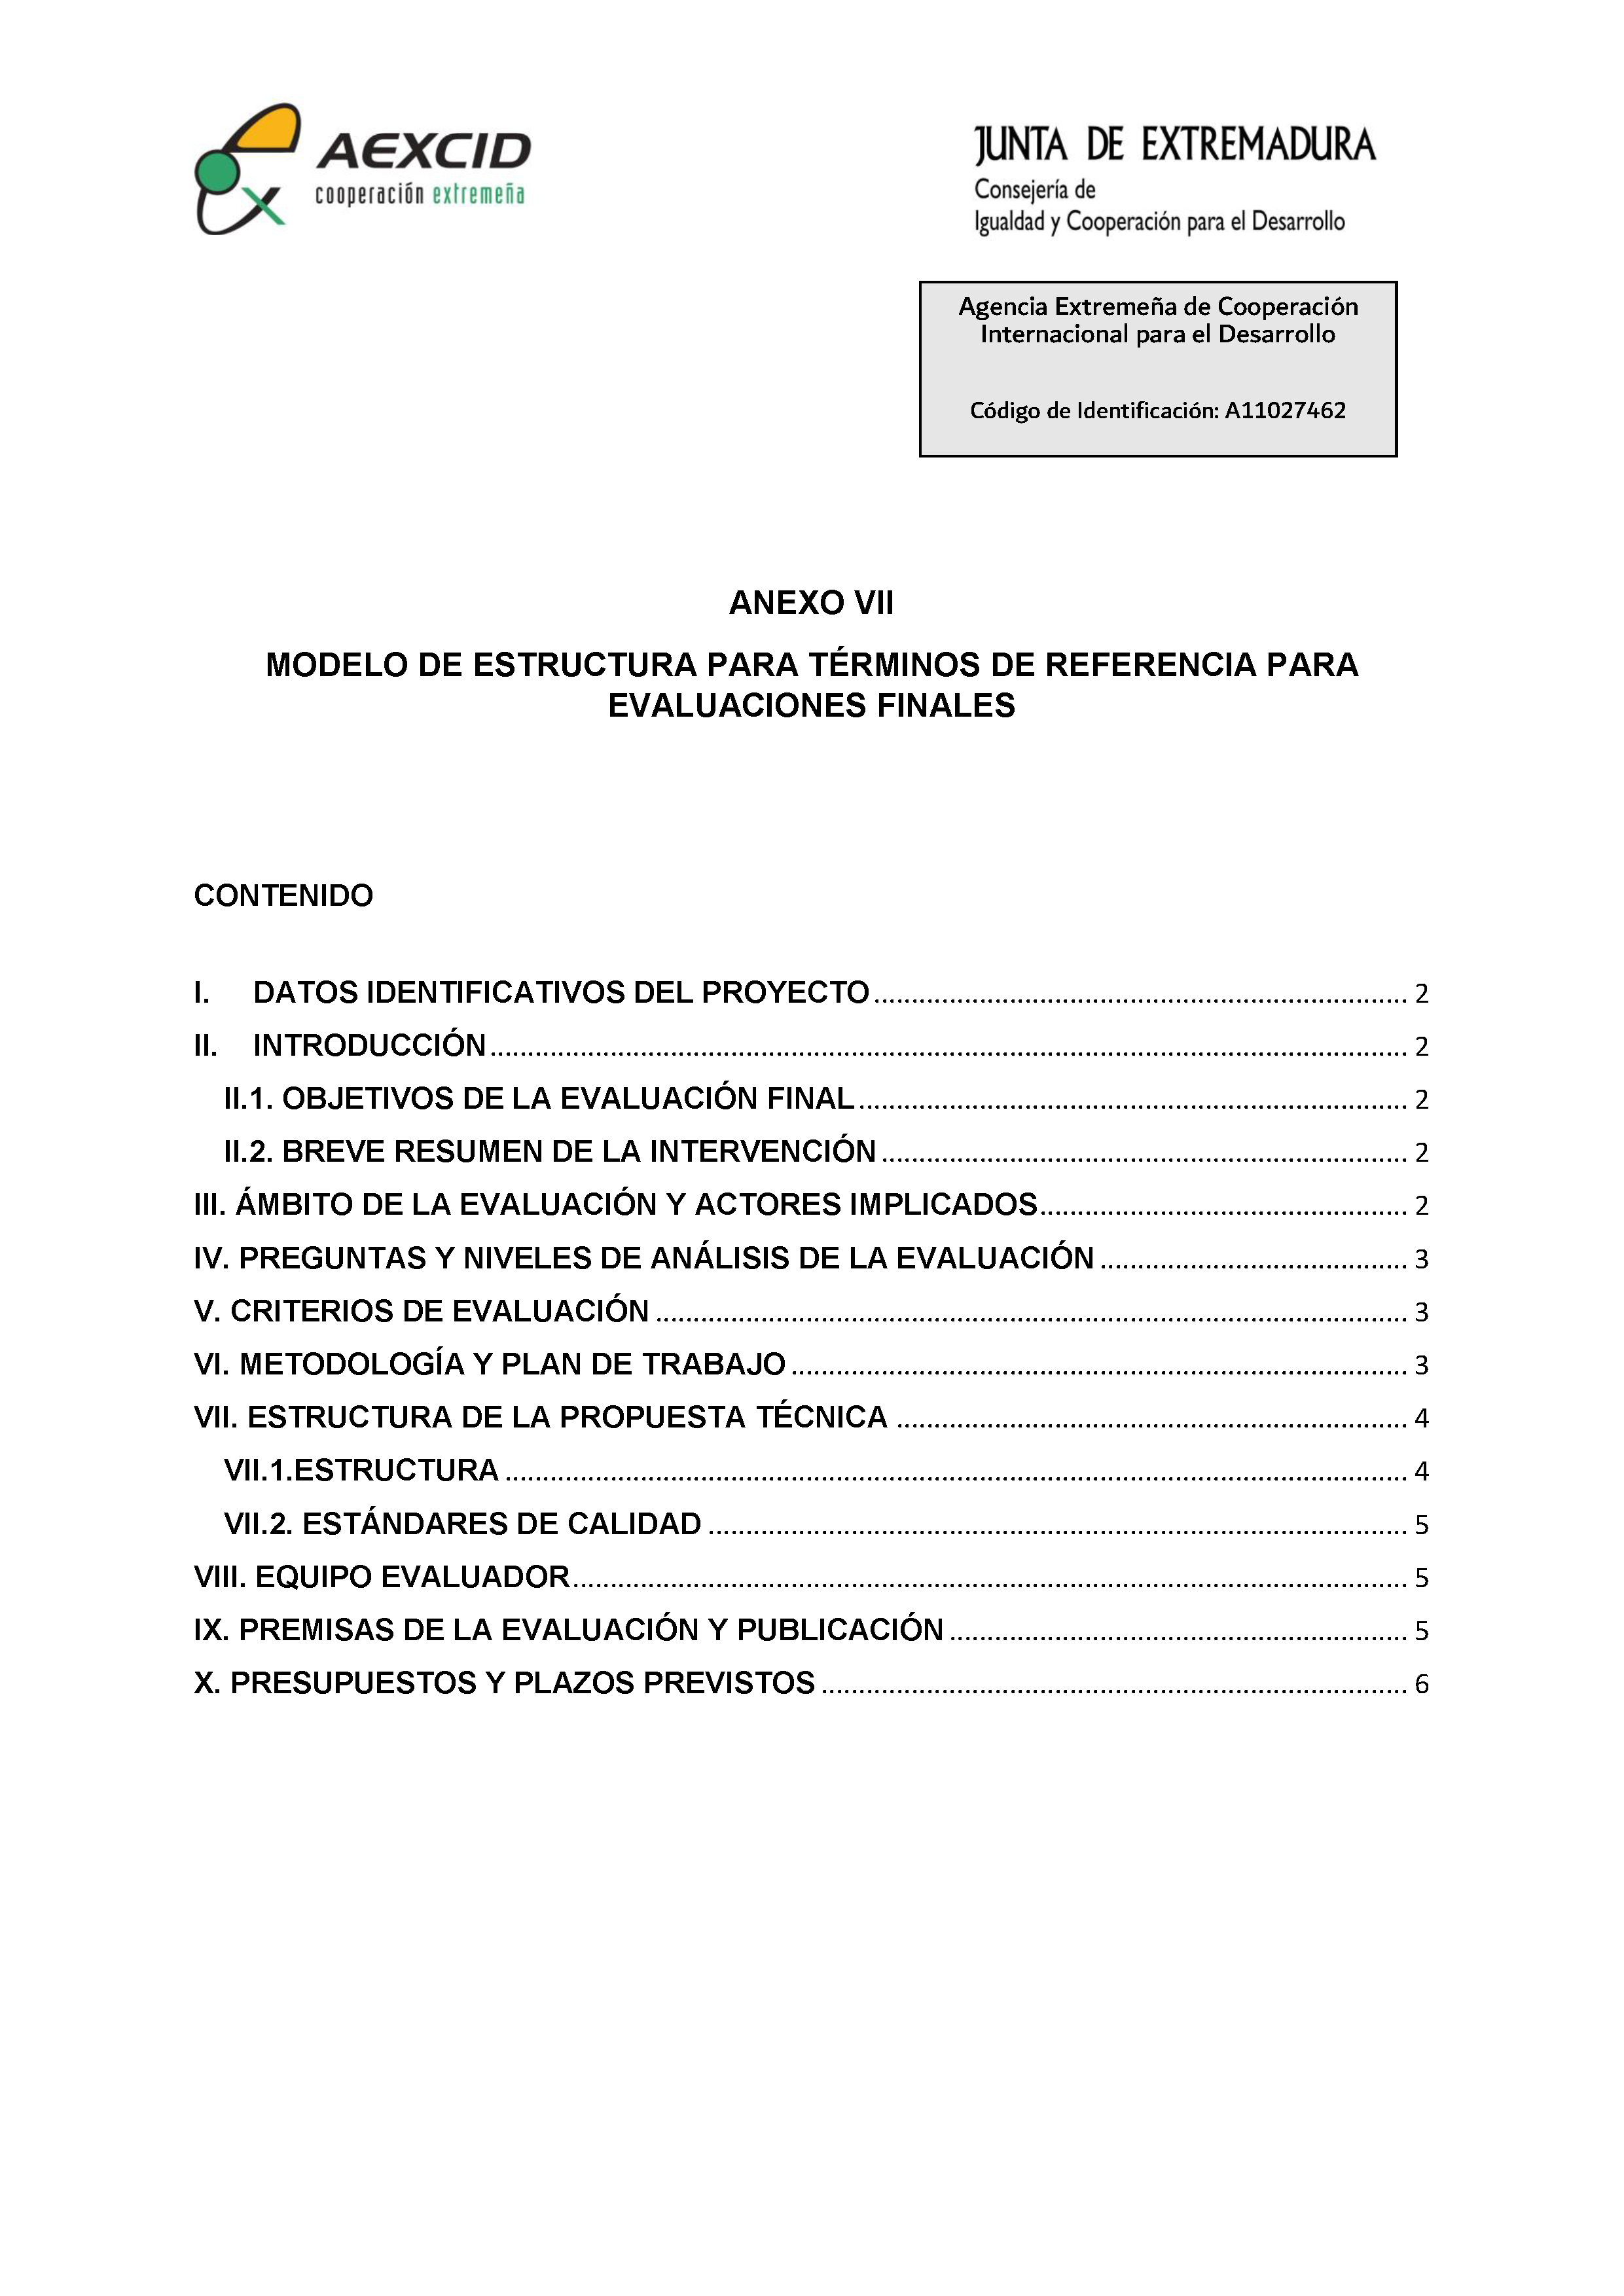 ANEXO VIII MODELO DE ESTRUCTURA PARA TÉRMINOS DE REFERENCIA PARA EVALUACIONES FINALES PAG.1